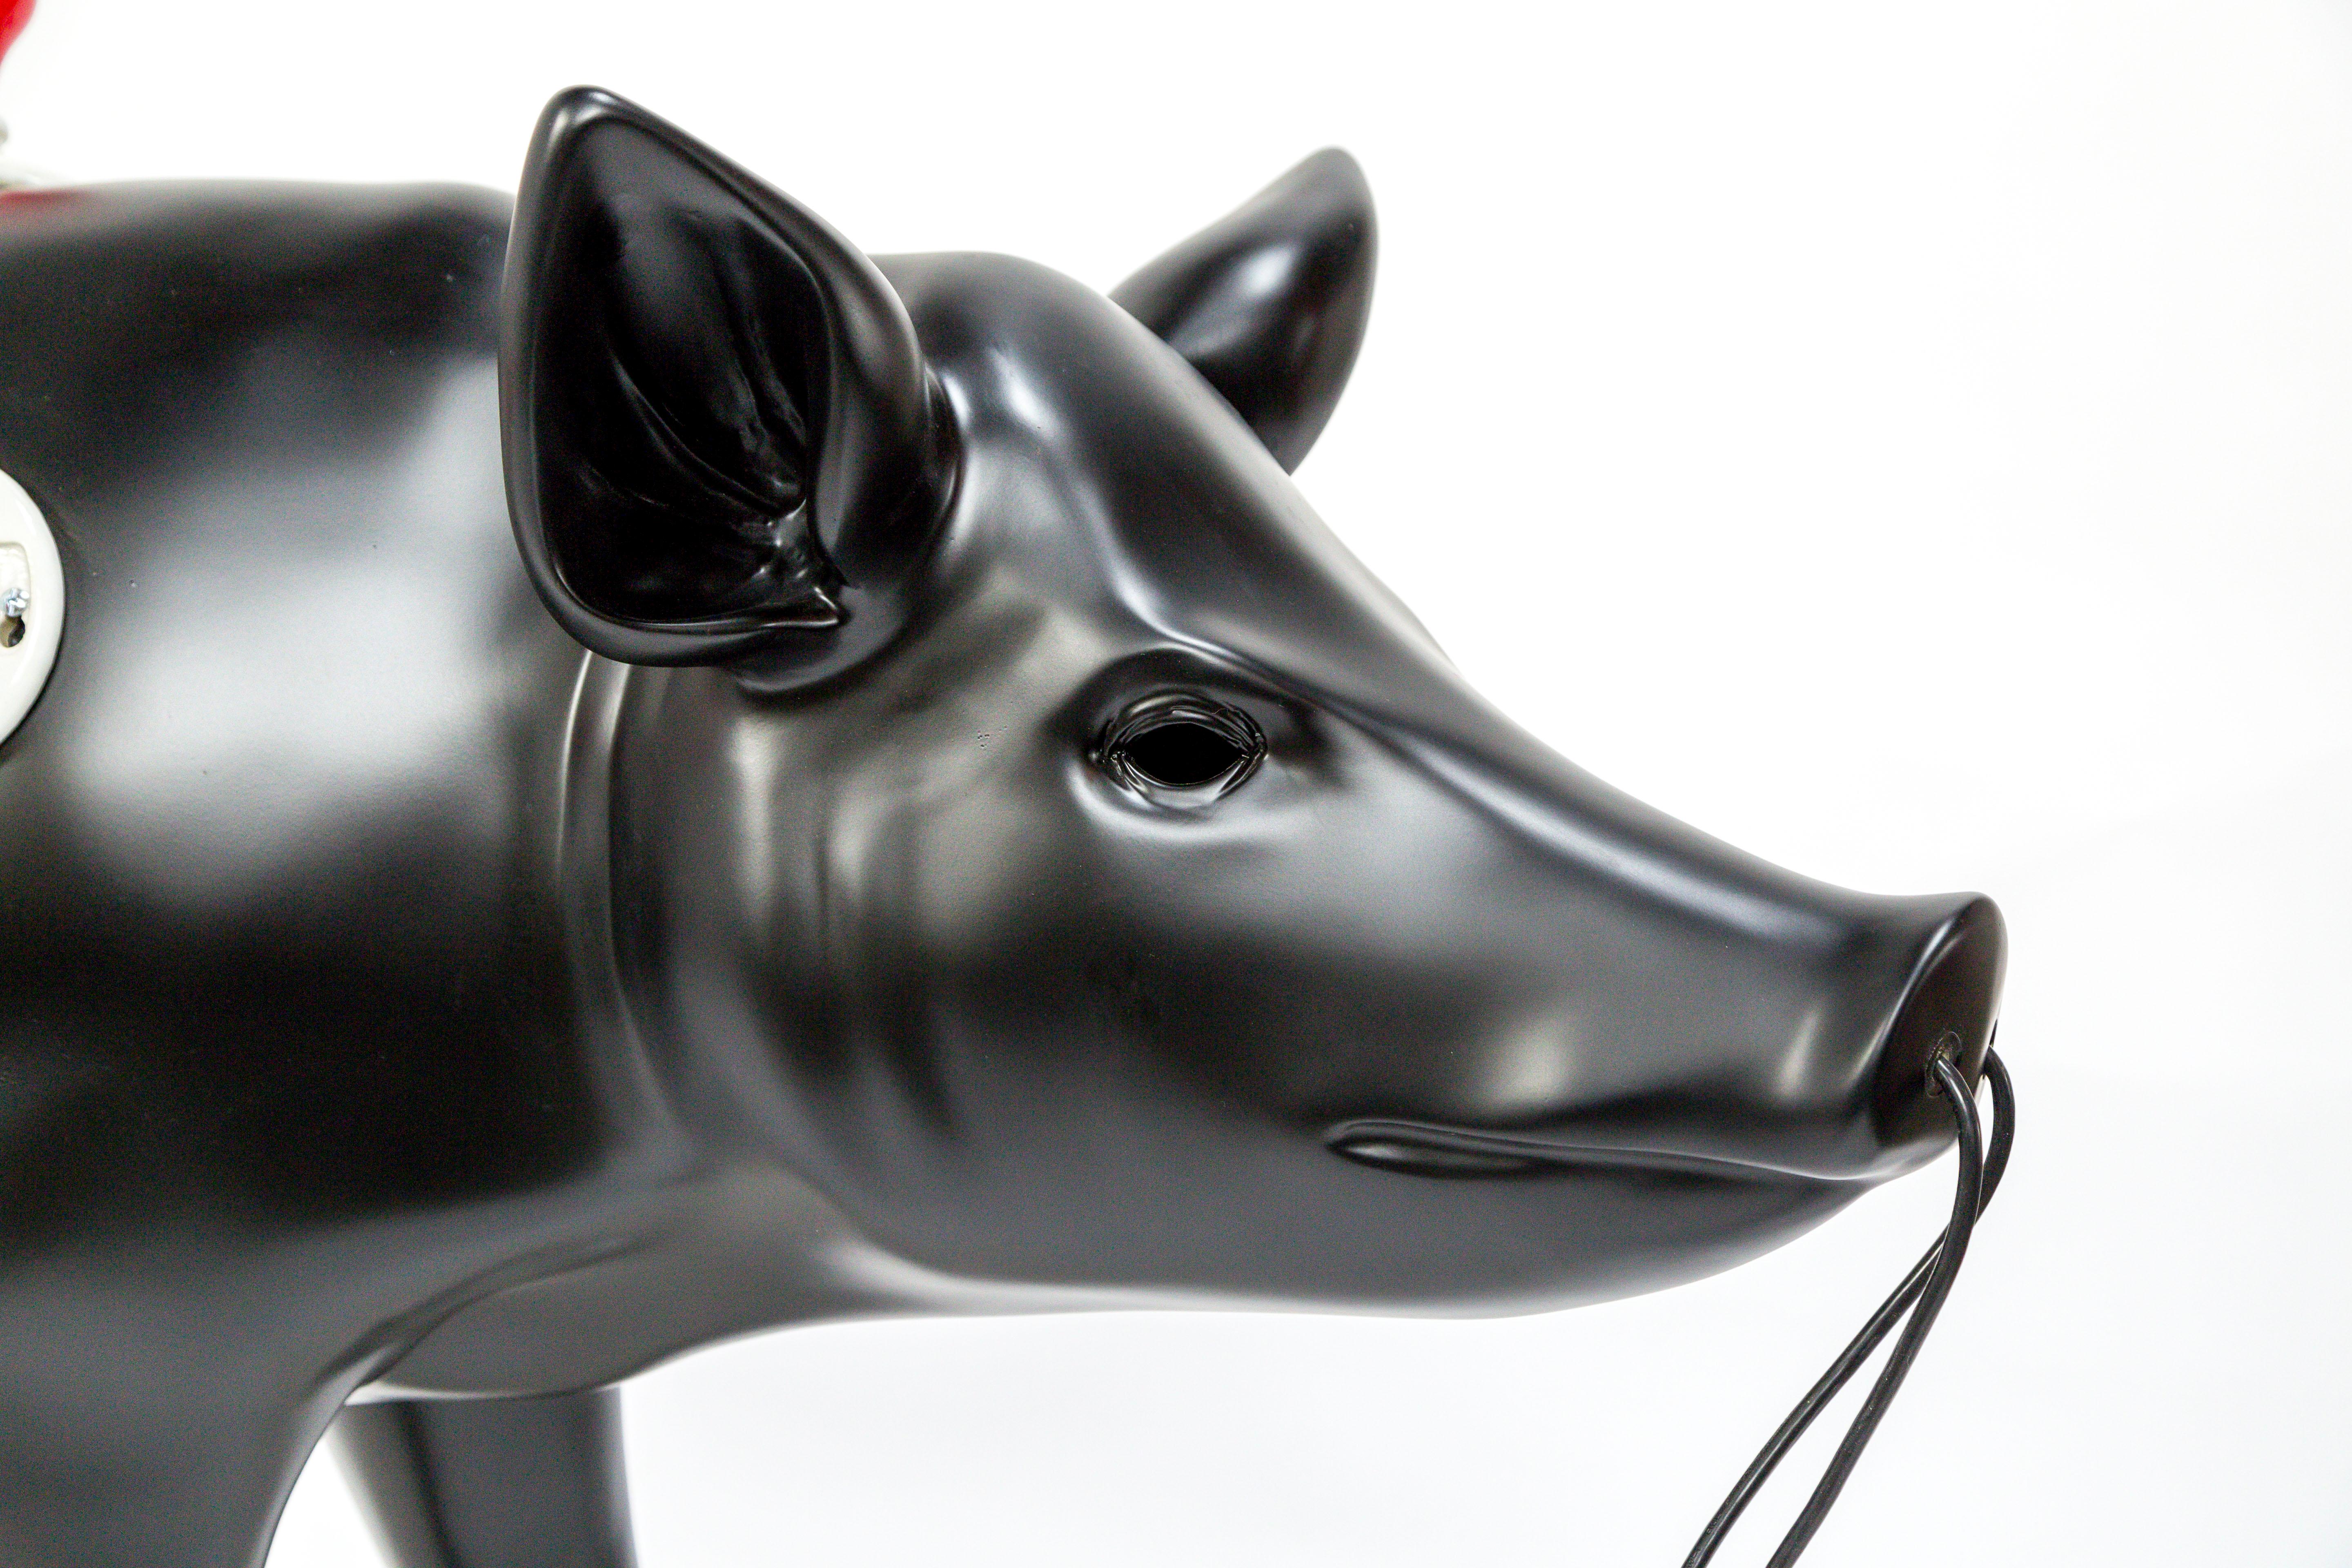 Life Sized Black Pig 13-socket Floor Lamp by Artist Charles Linder (Glasfaser)